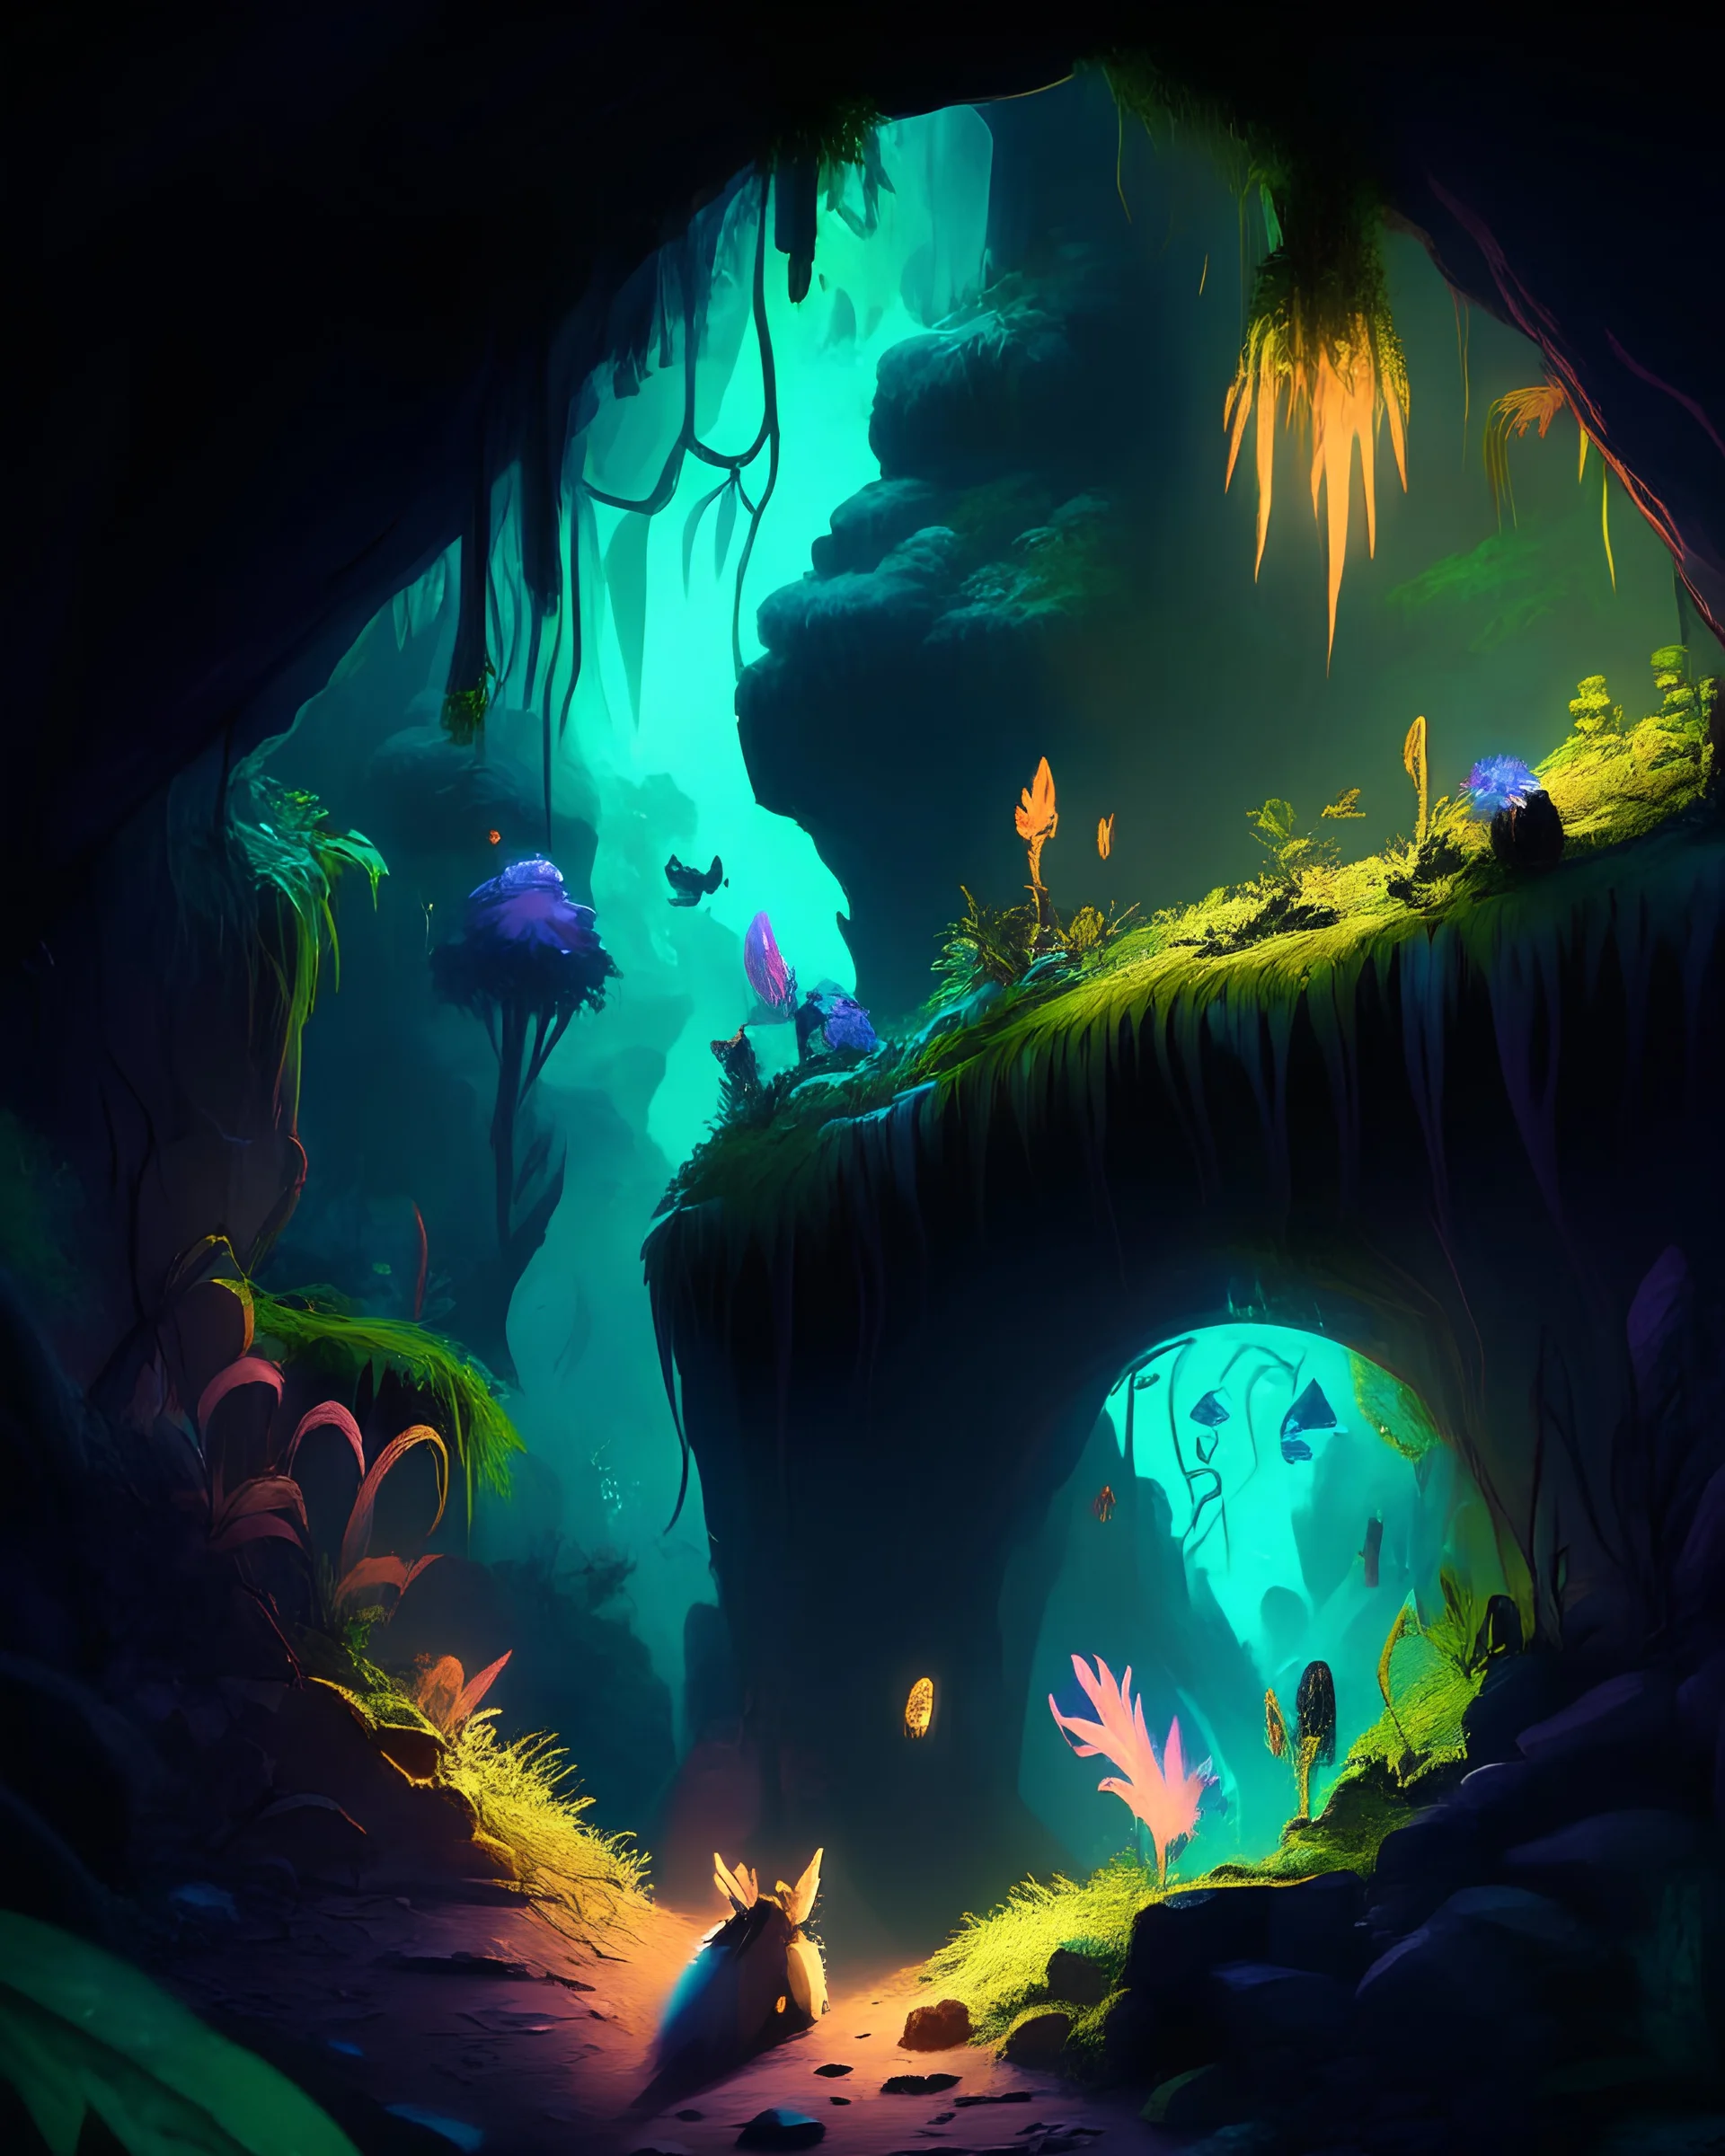 Vue d'un village fantastique et mystérieux situé dans une grande caverne très sombre. Des plantes luminescentes fantastiques jonchent les parois de la caverne. Des animaux fantastiques à fourrure colorée se déplacent ça et là. La végétation est luxuriante.